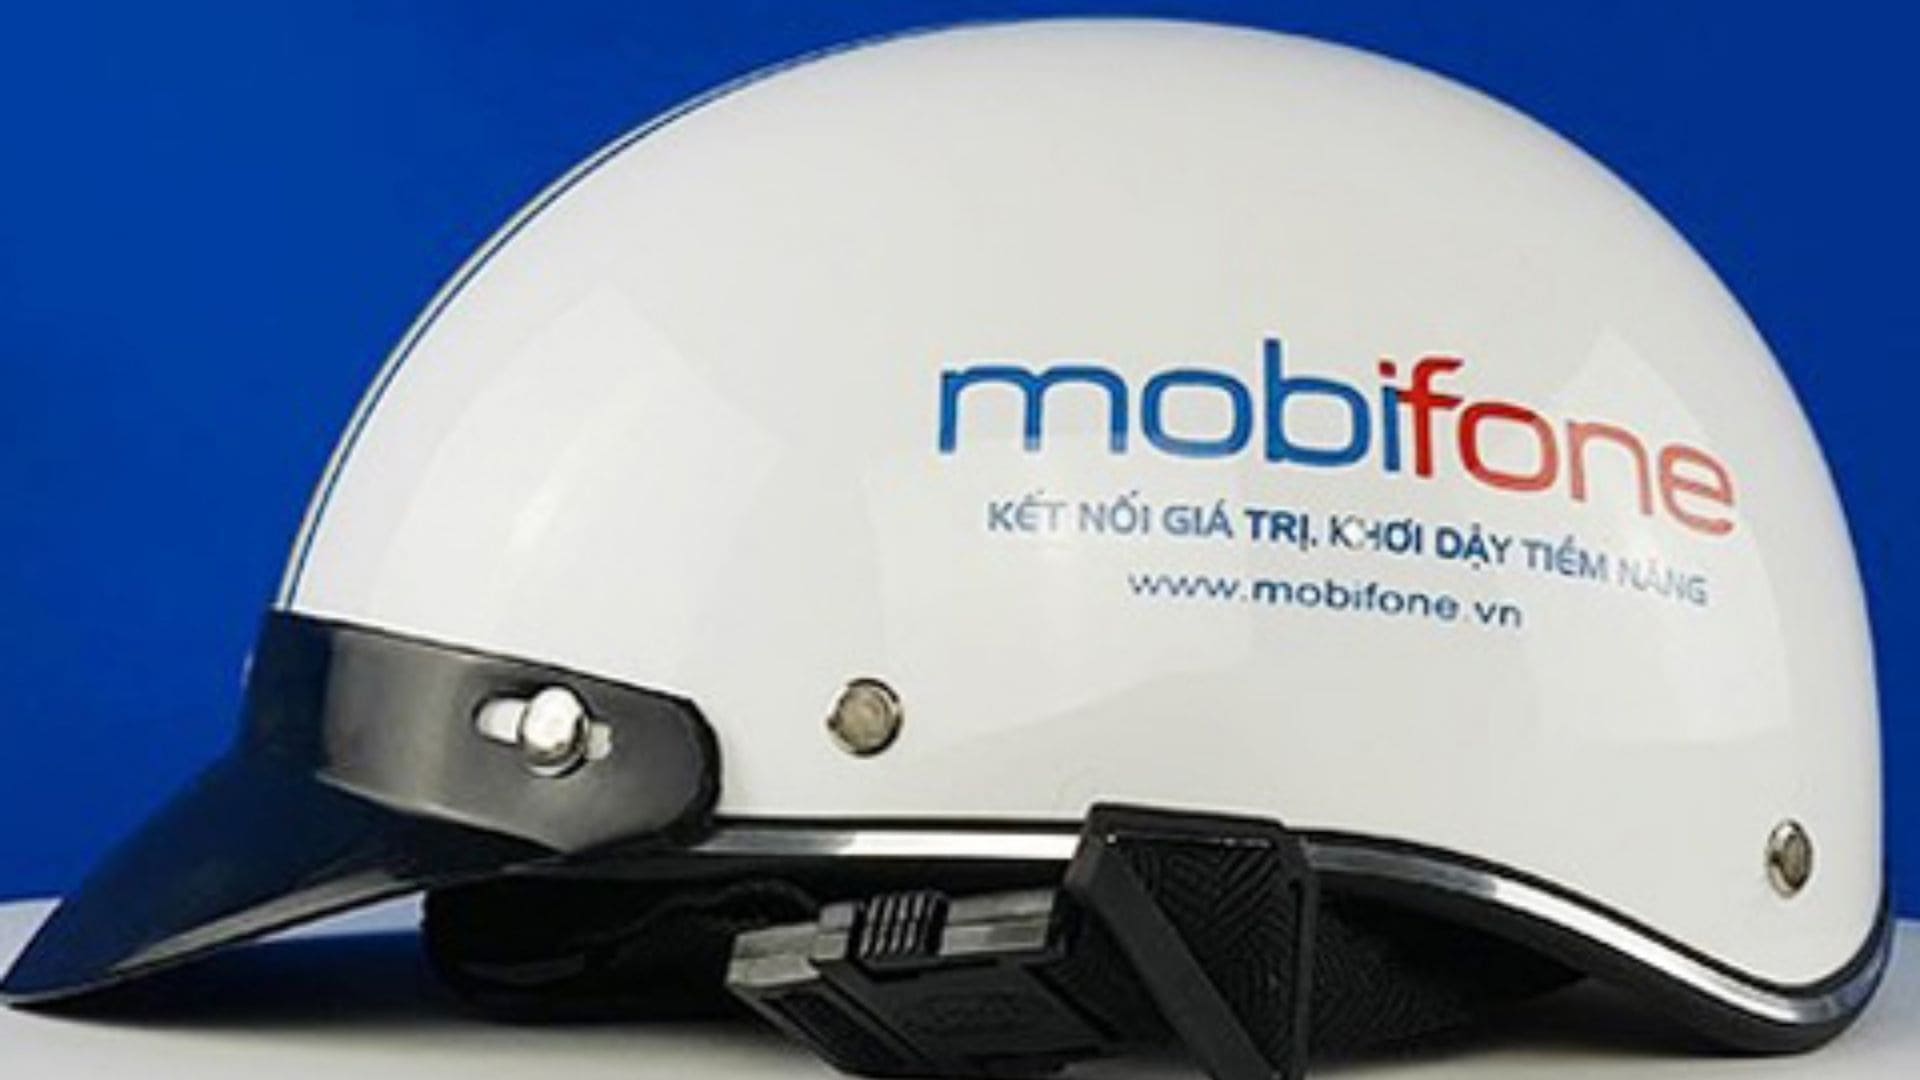 Nón bảo hiểm Mobifone - Tổng công ty Viễn thông Mobifone